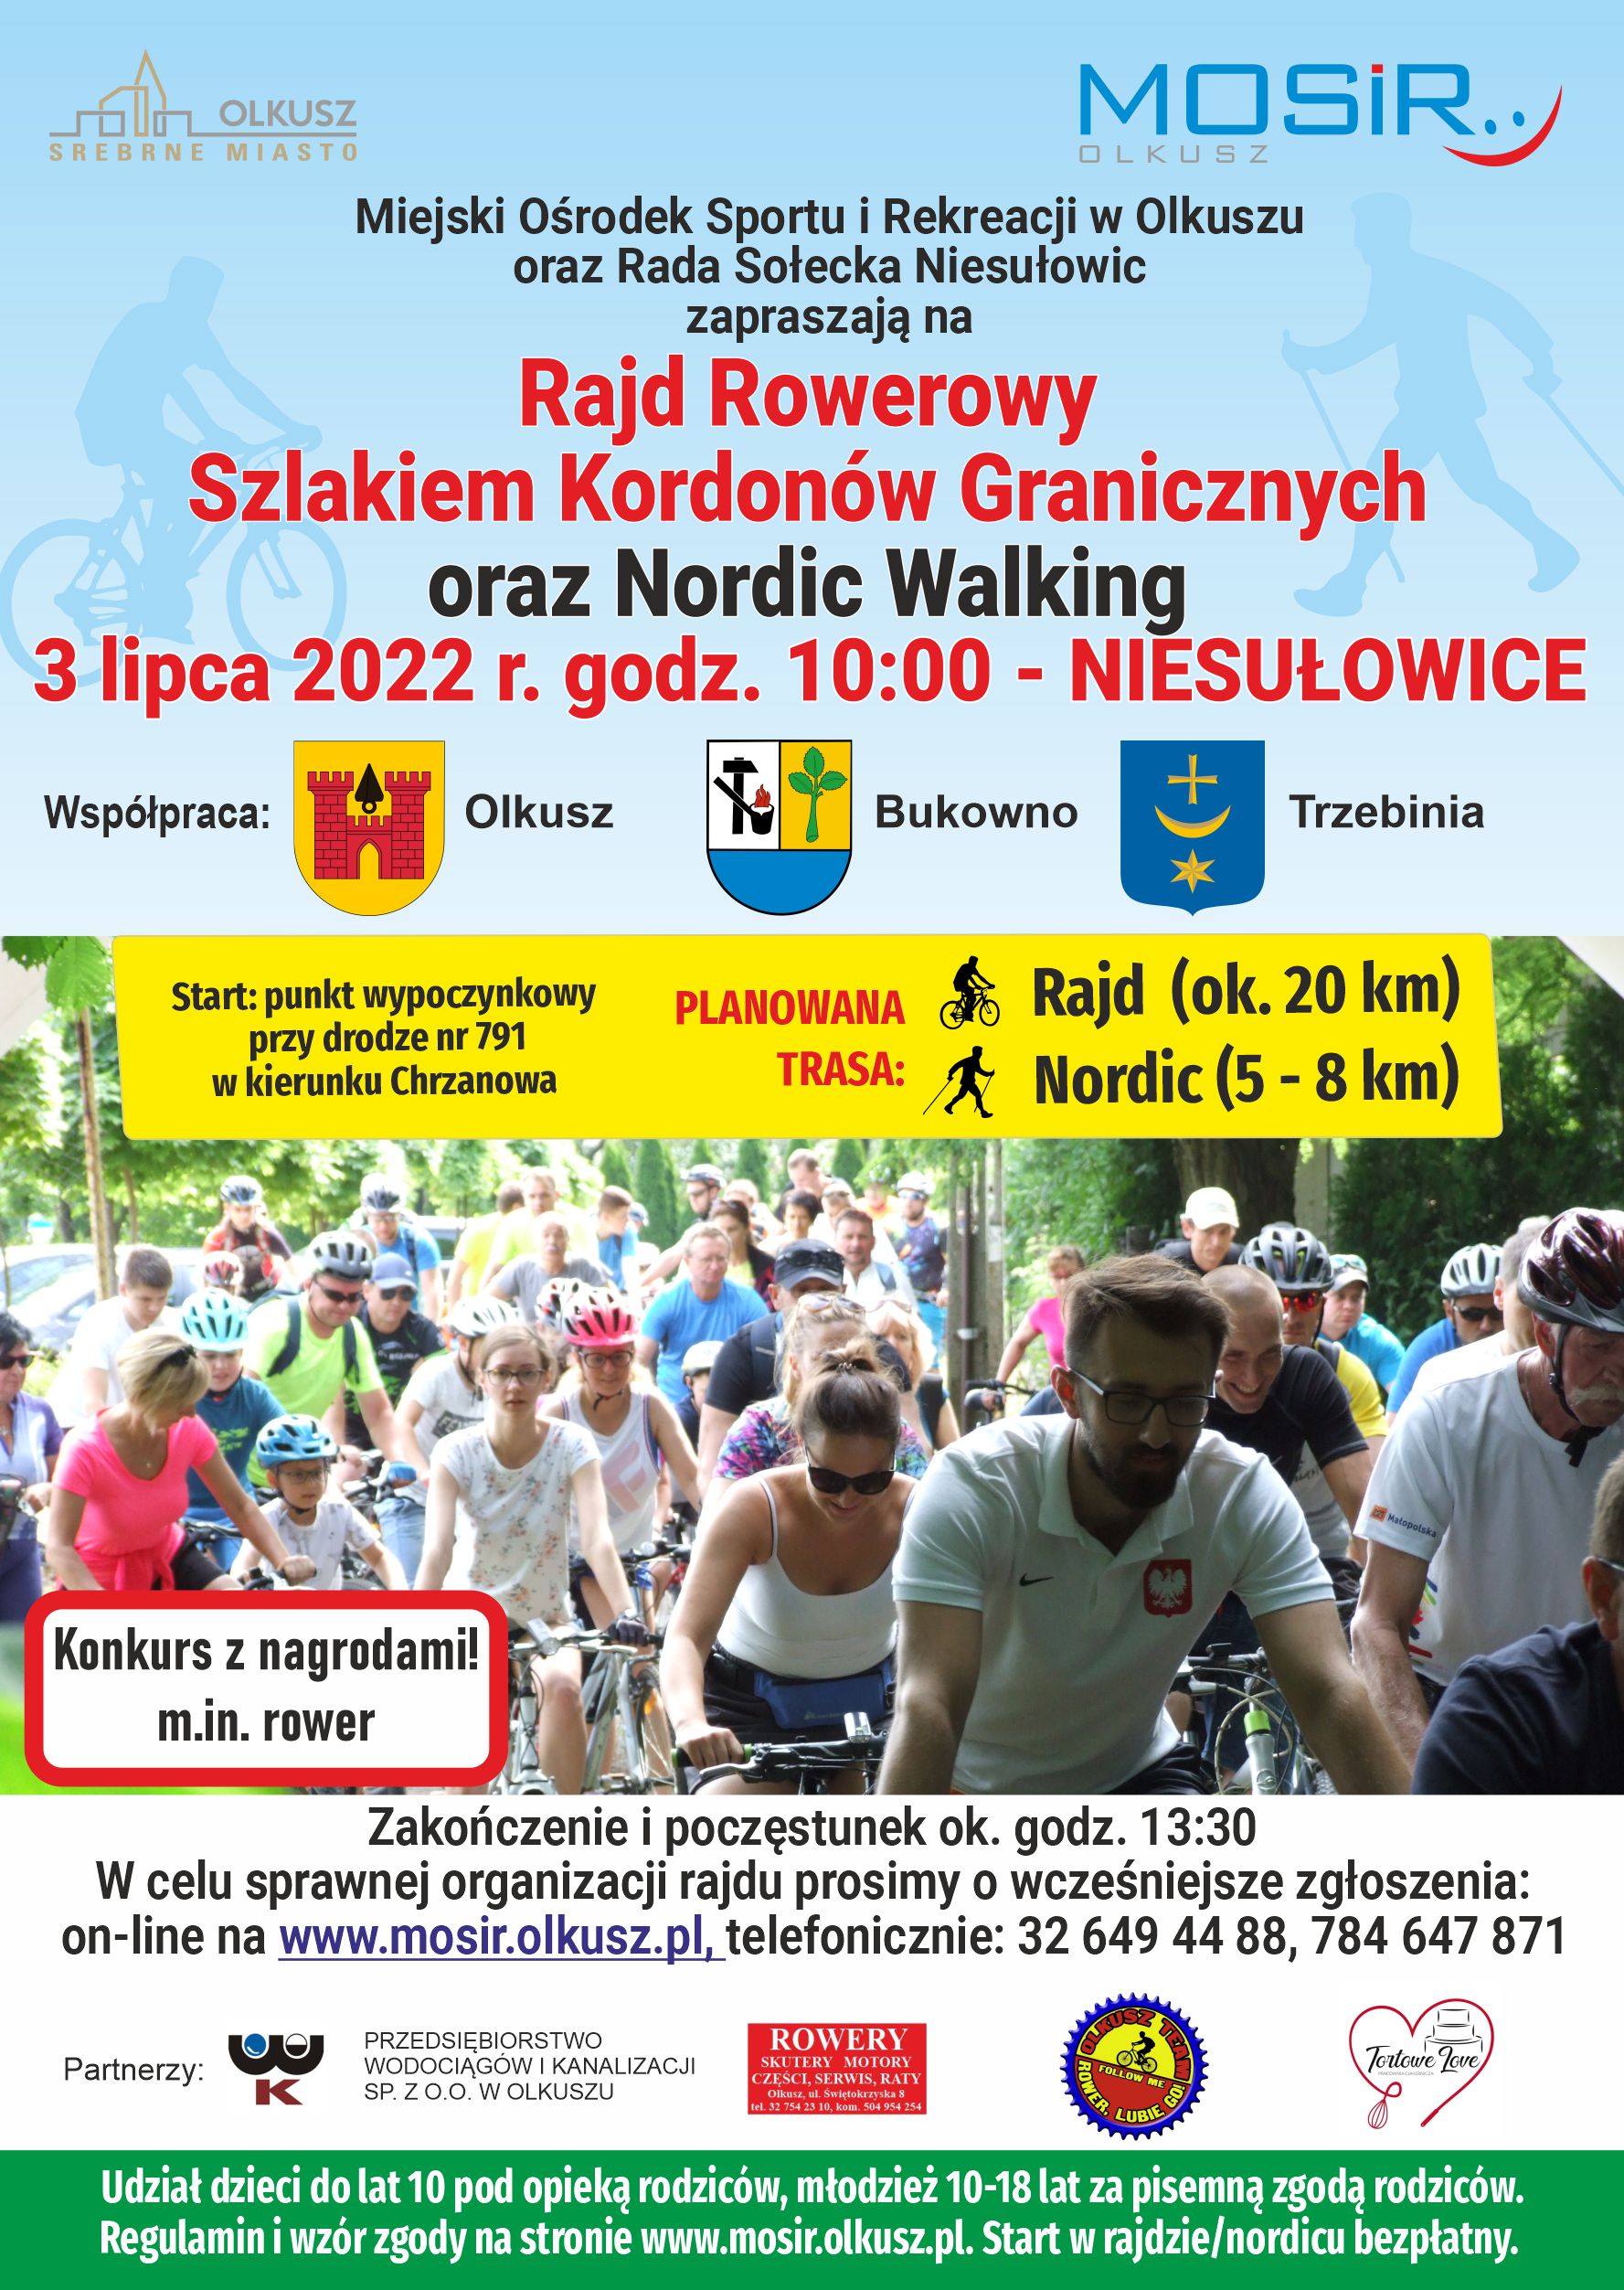 Plakat promujący Rajd Rowerowy Szlakiem Kordonów Granicznych oraz Nordic Walking